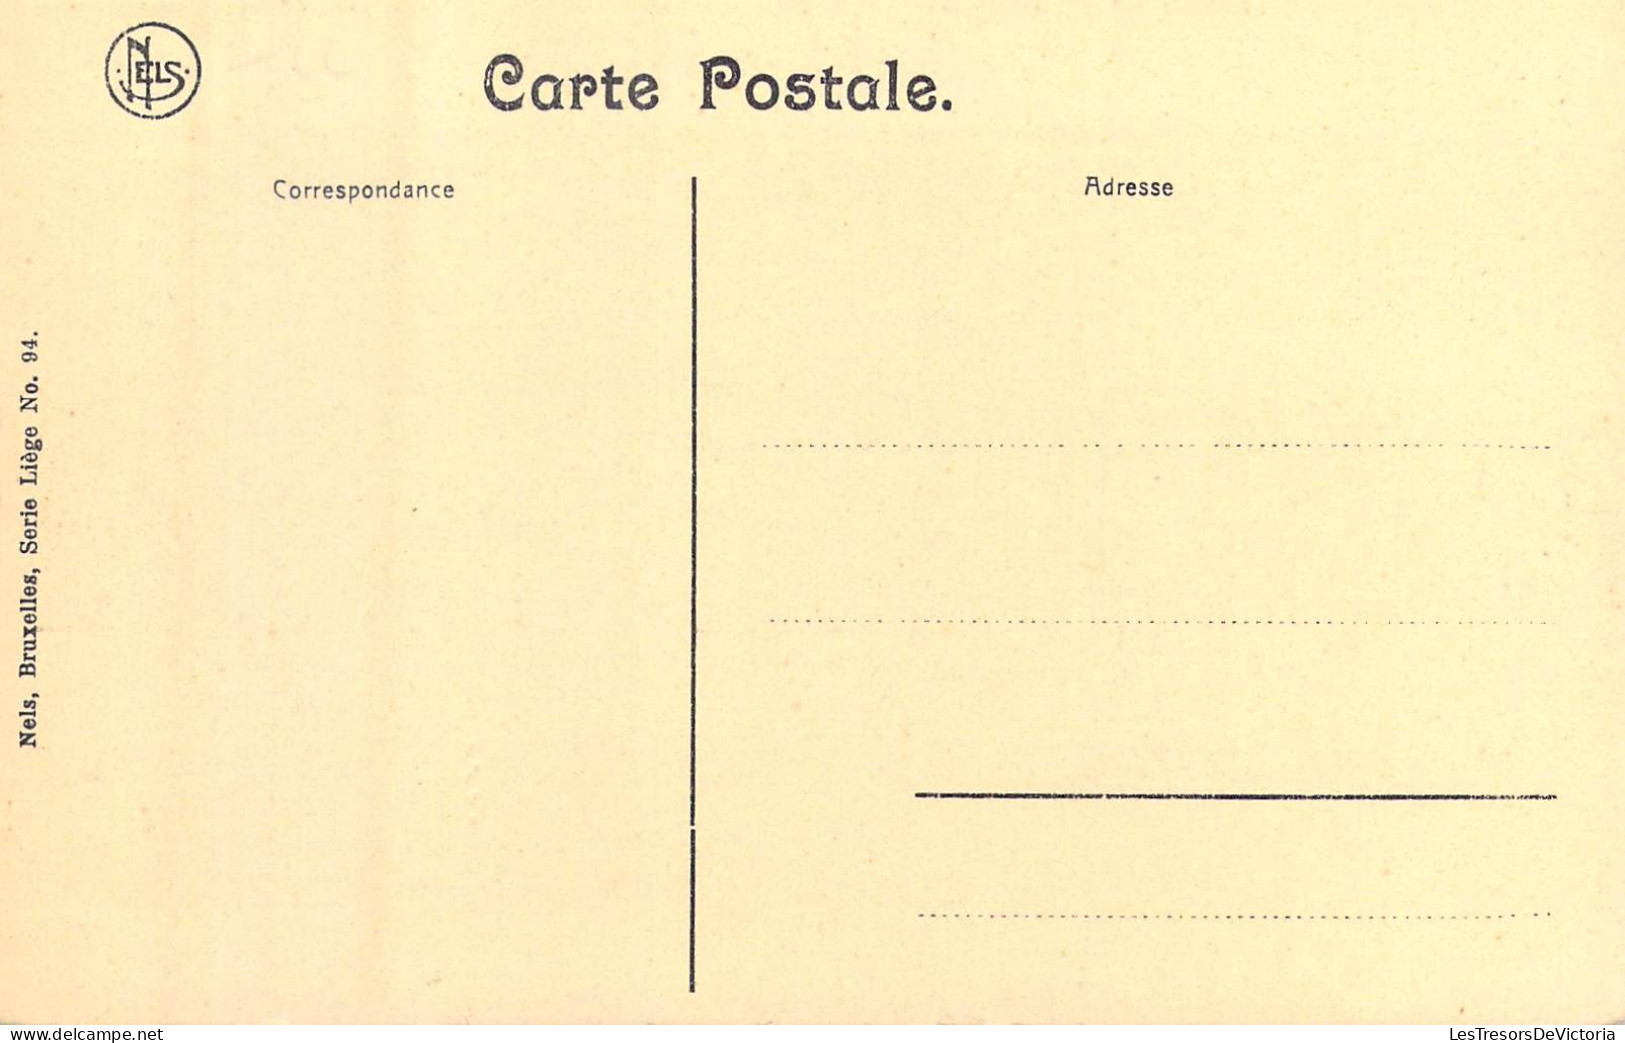 BELGIQUE - Liège - Quai De La Batte - Carte Postale Ancienne - Liege